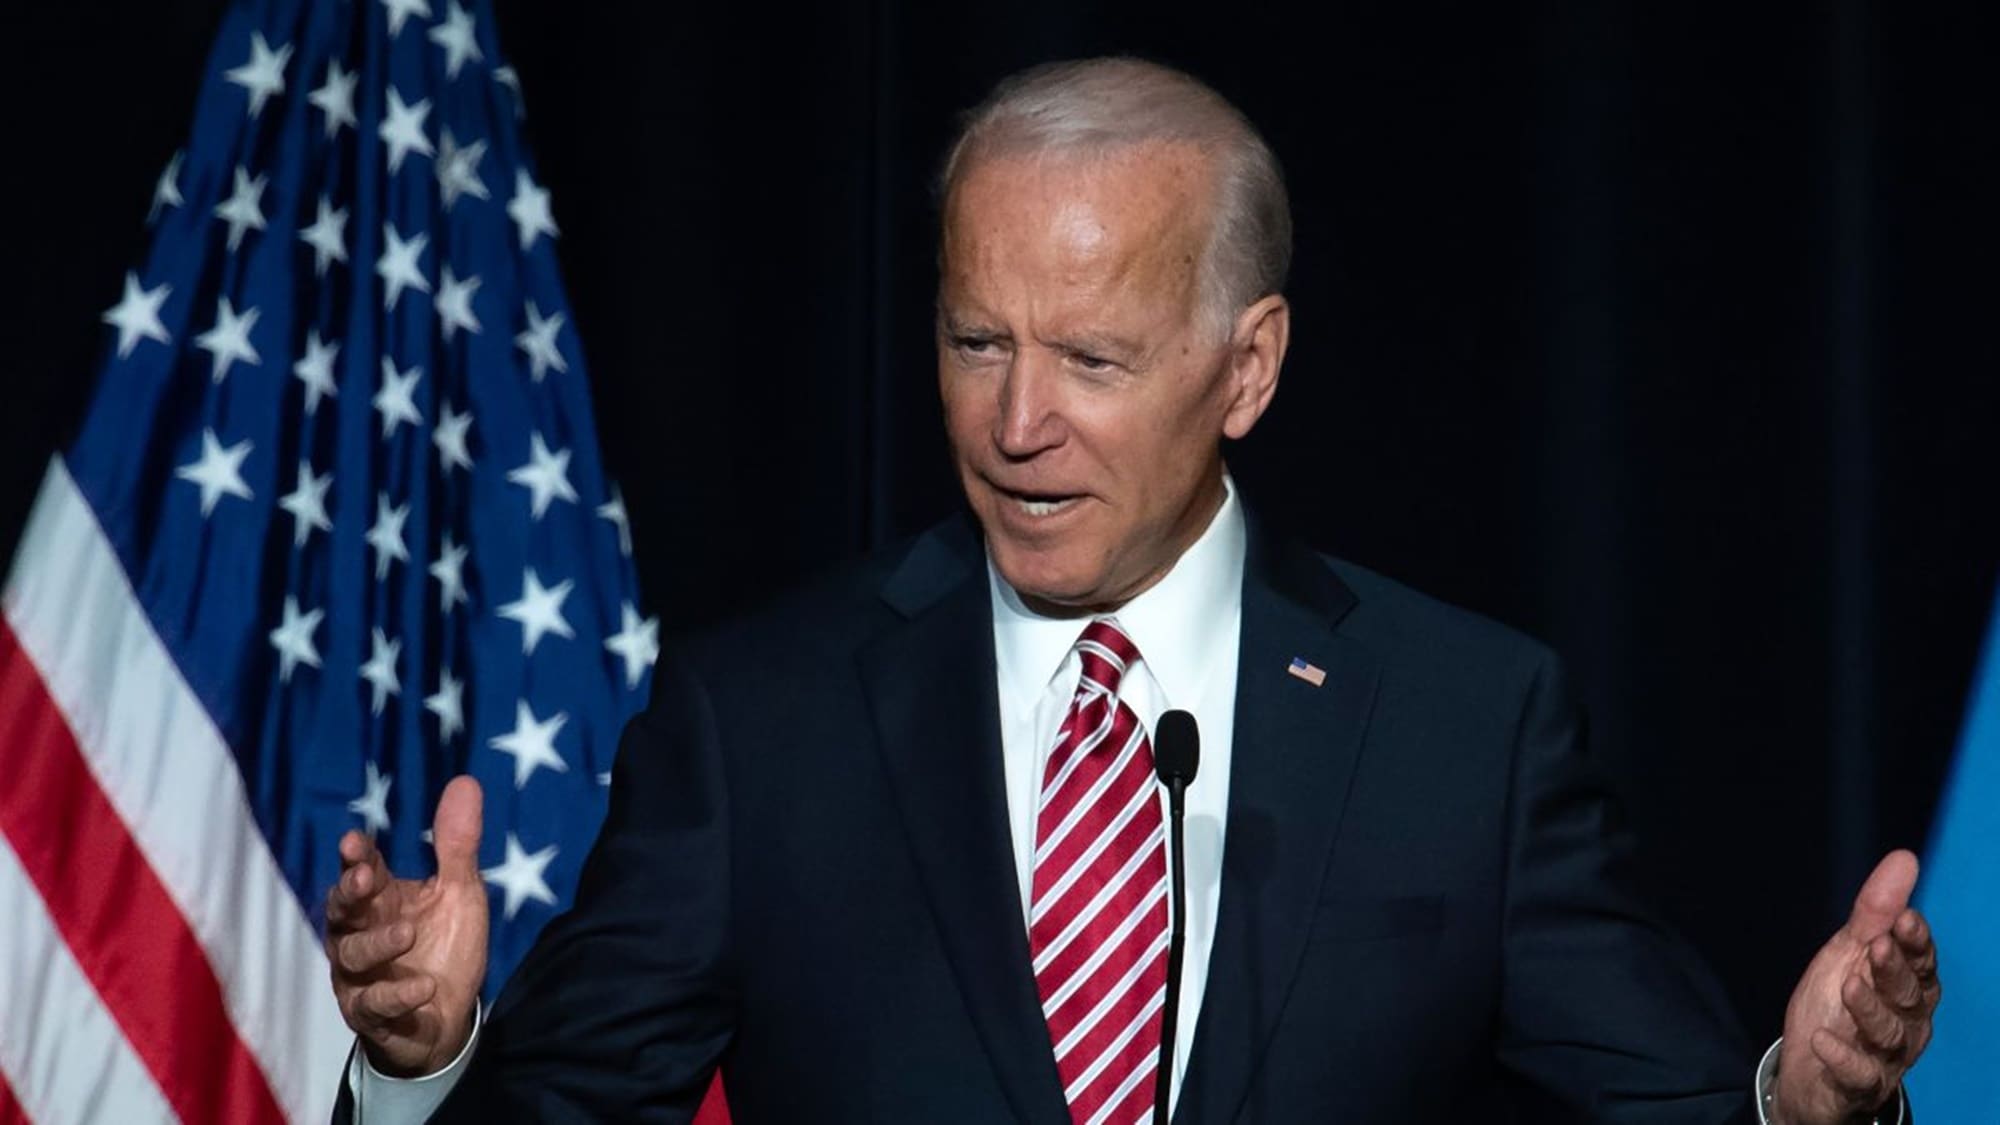 Joe Biden Election 2020 Female Accuser